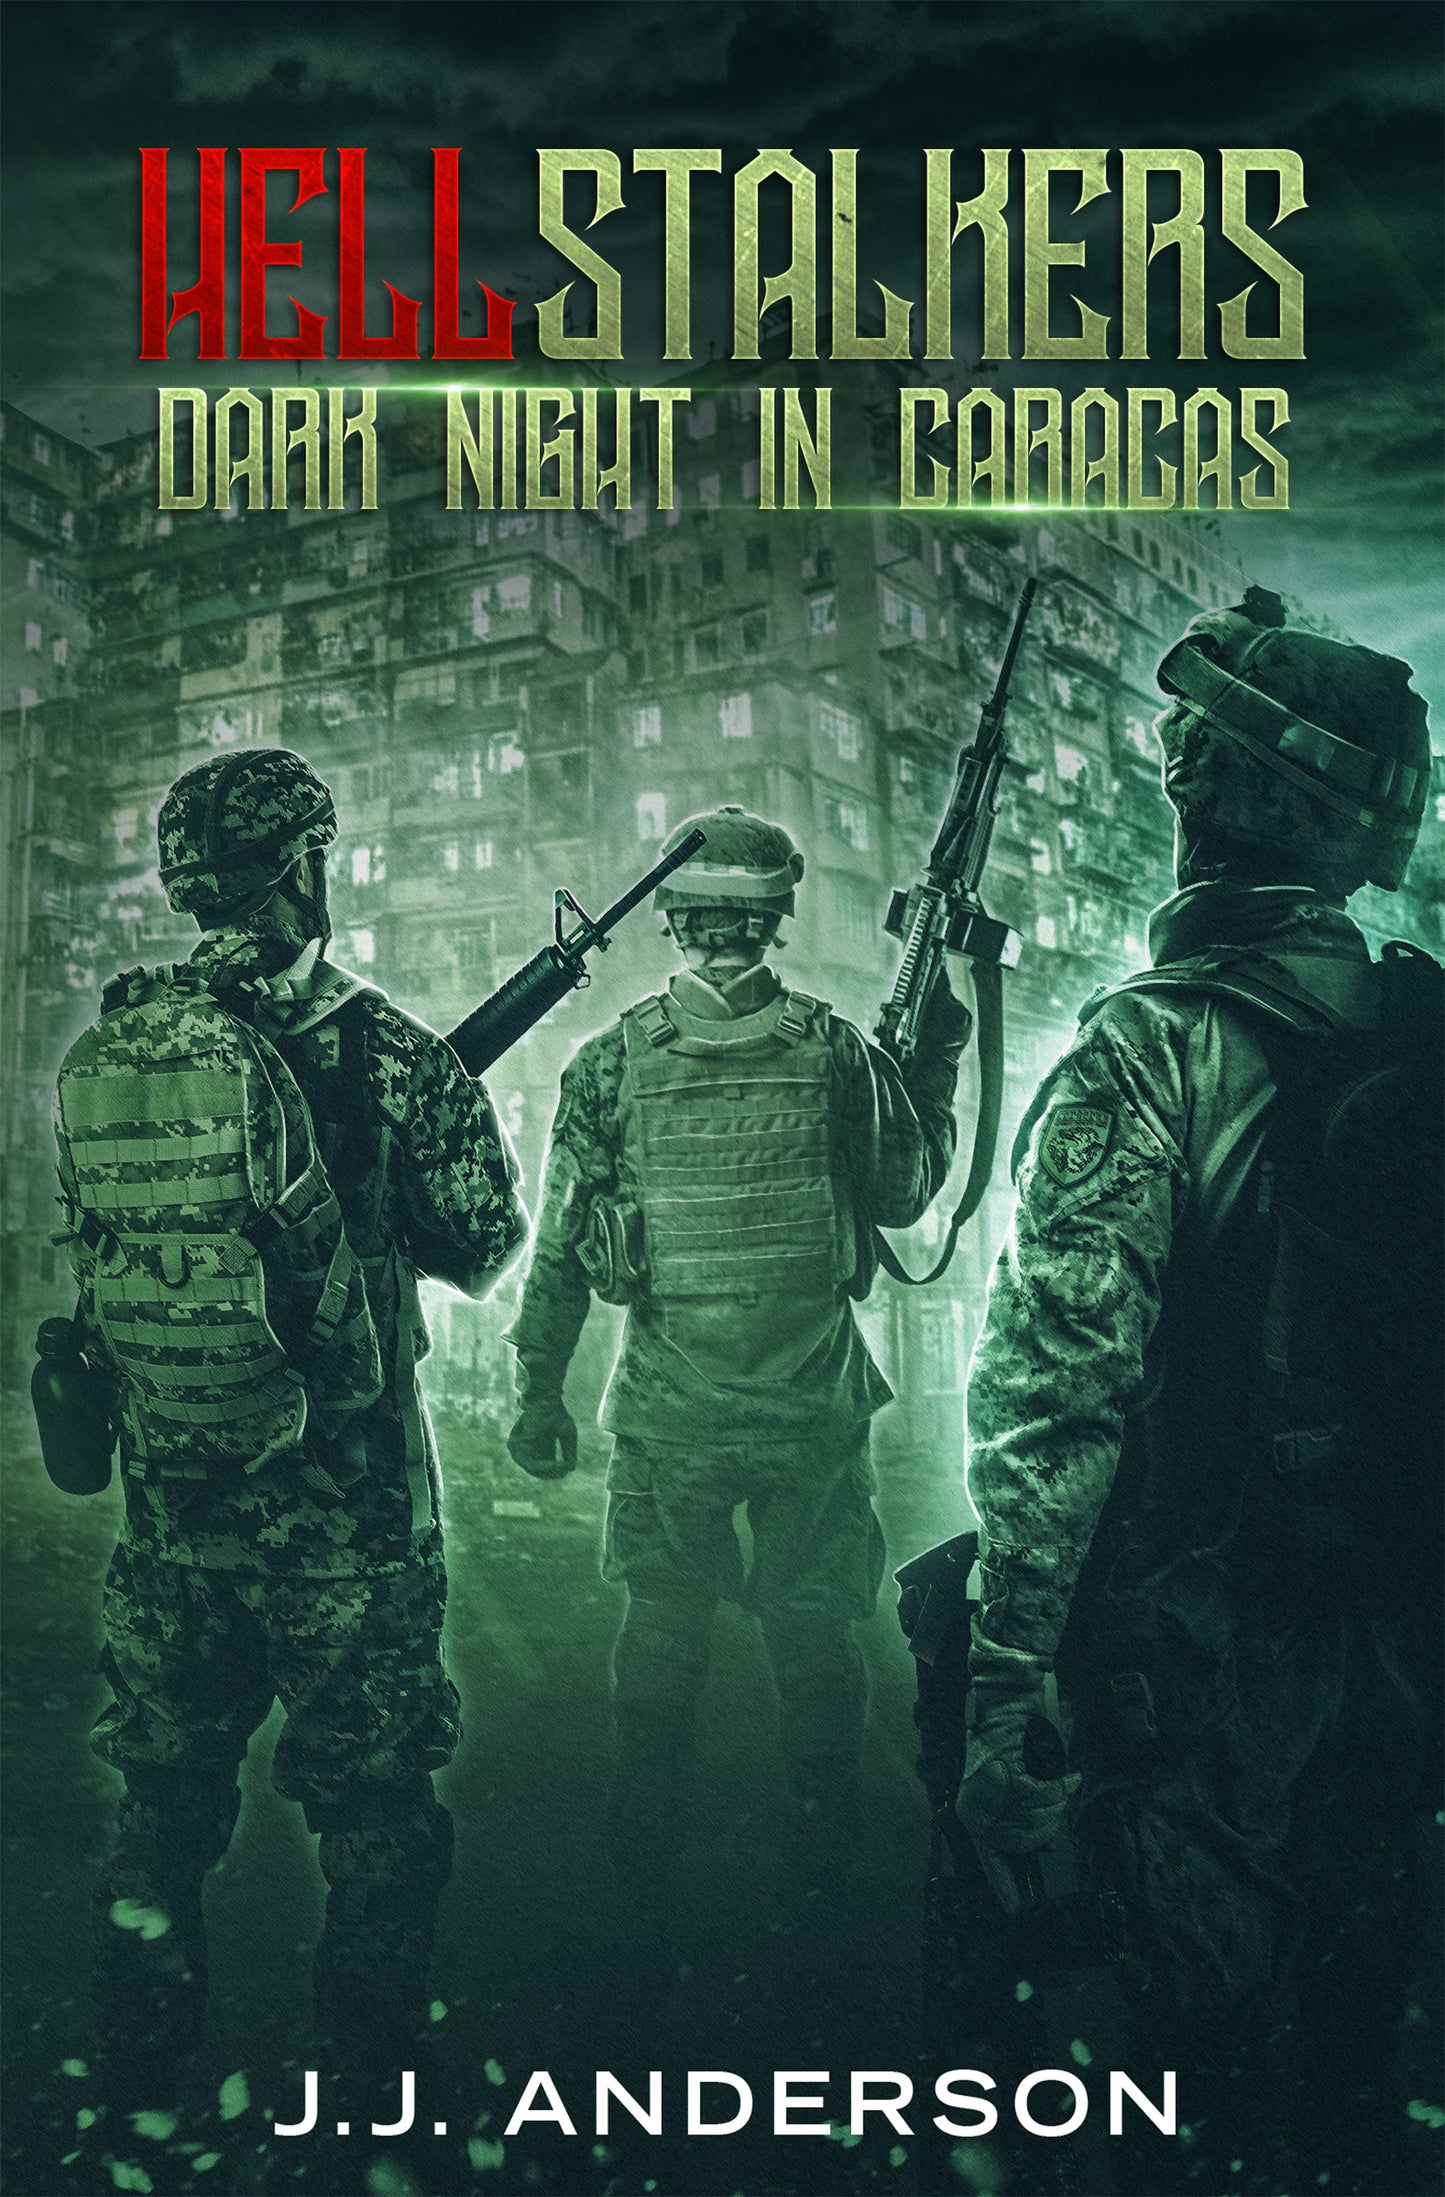 HELLStalkers: Dark Night in Caracas